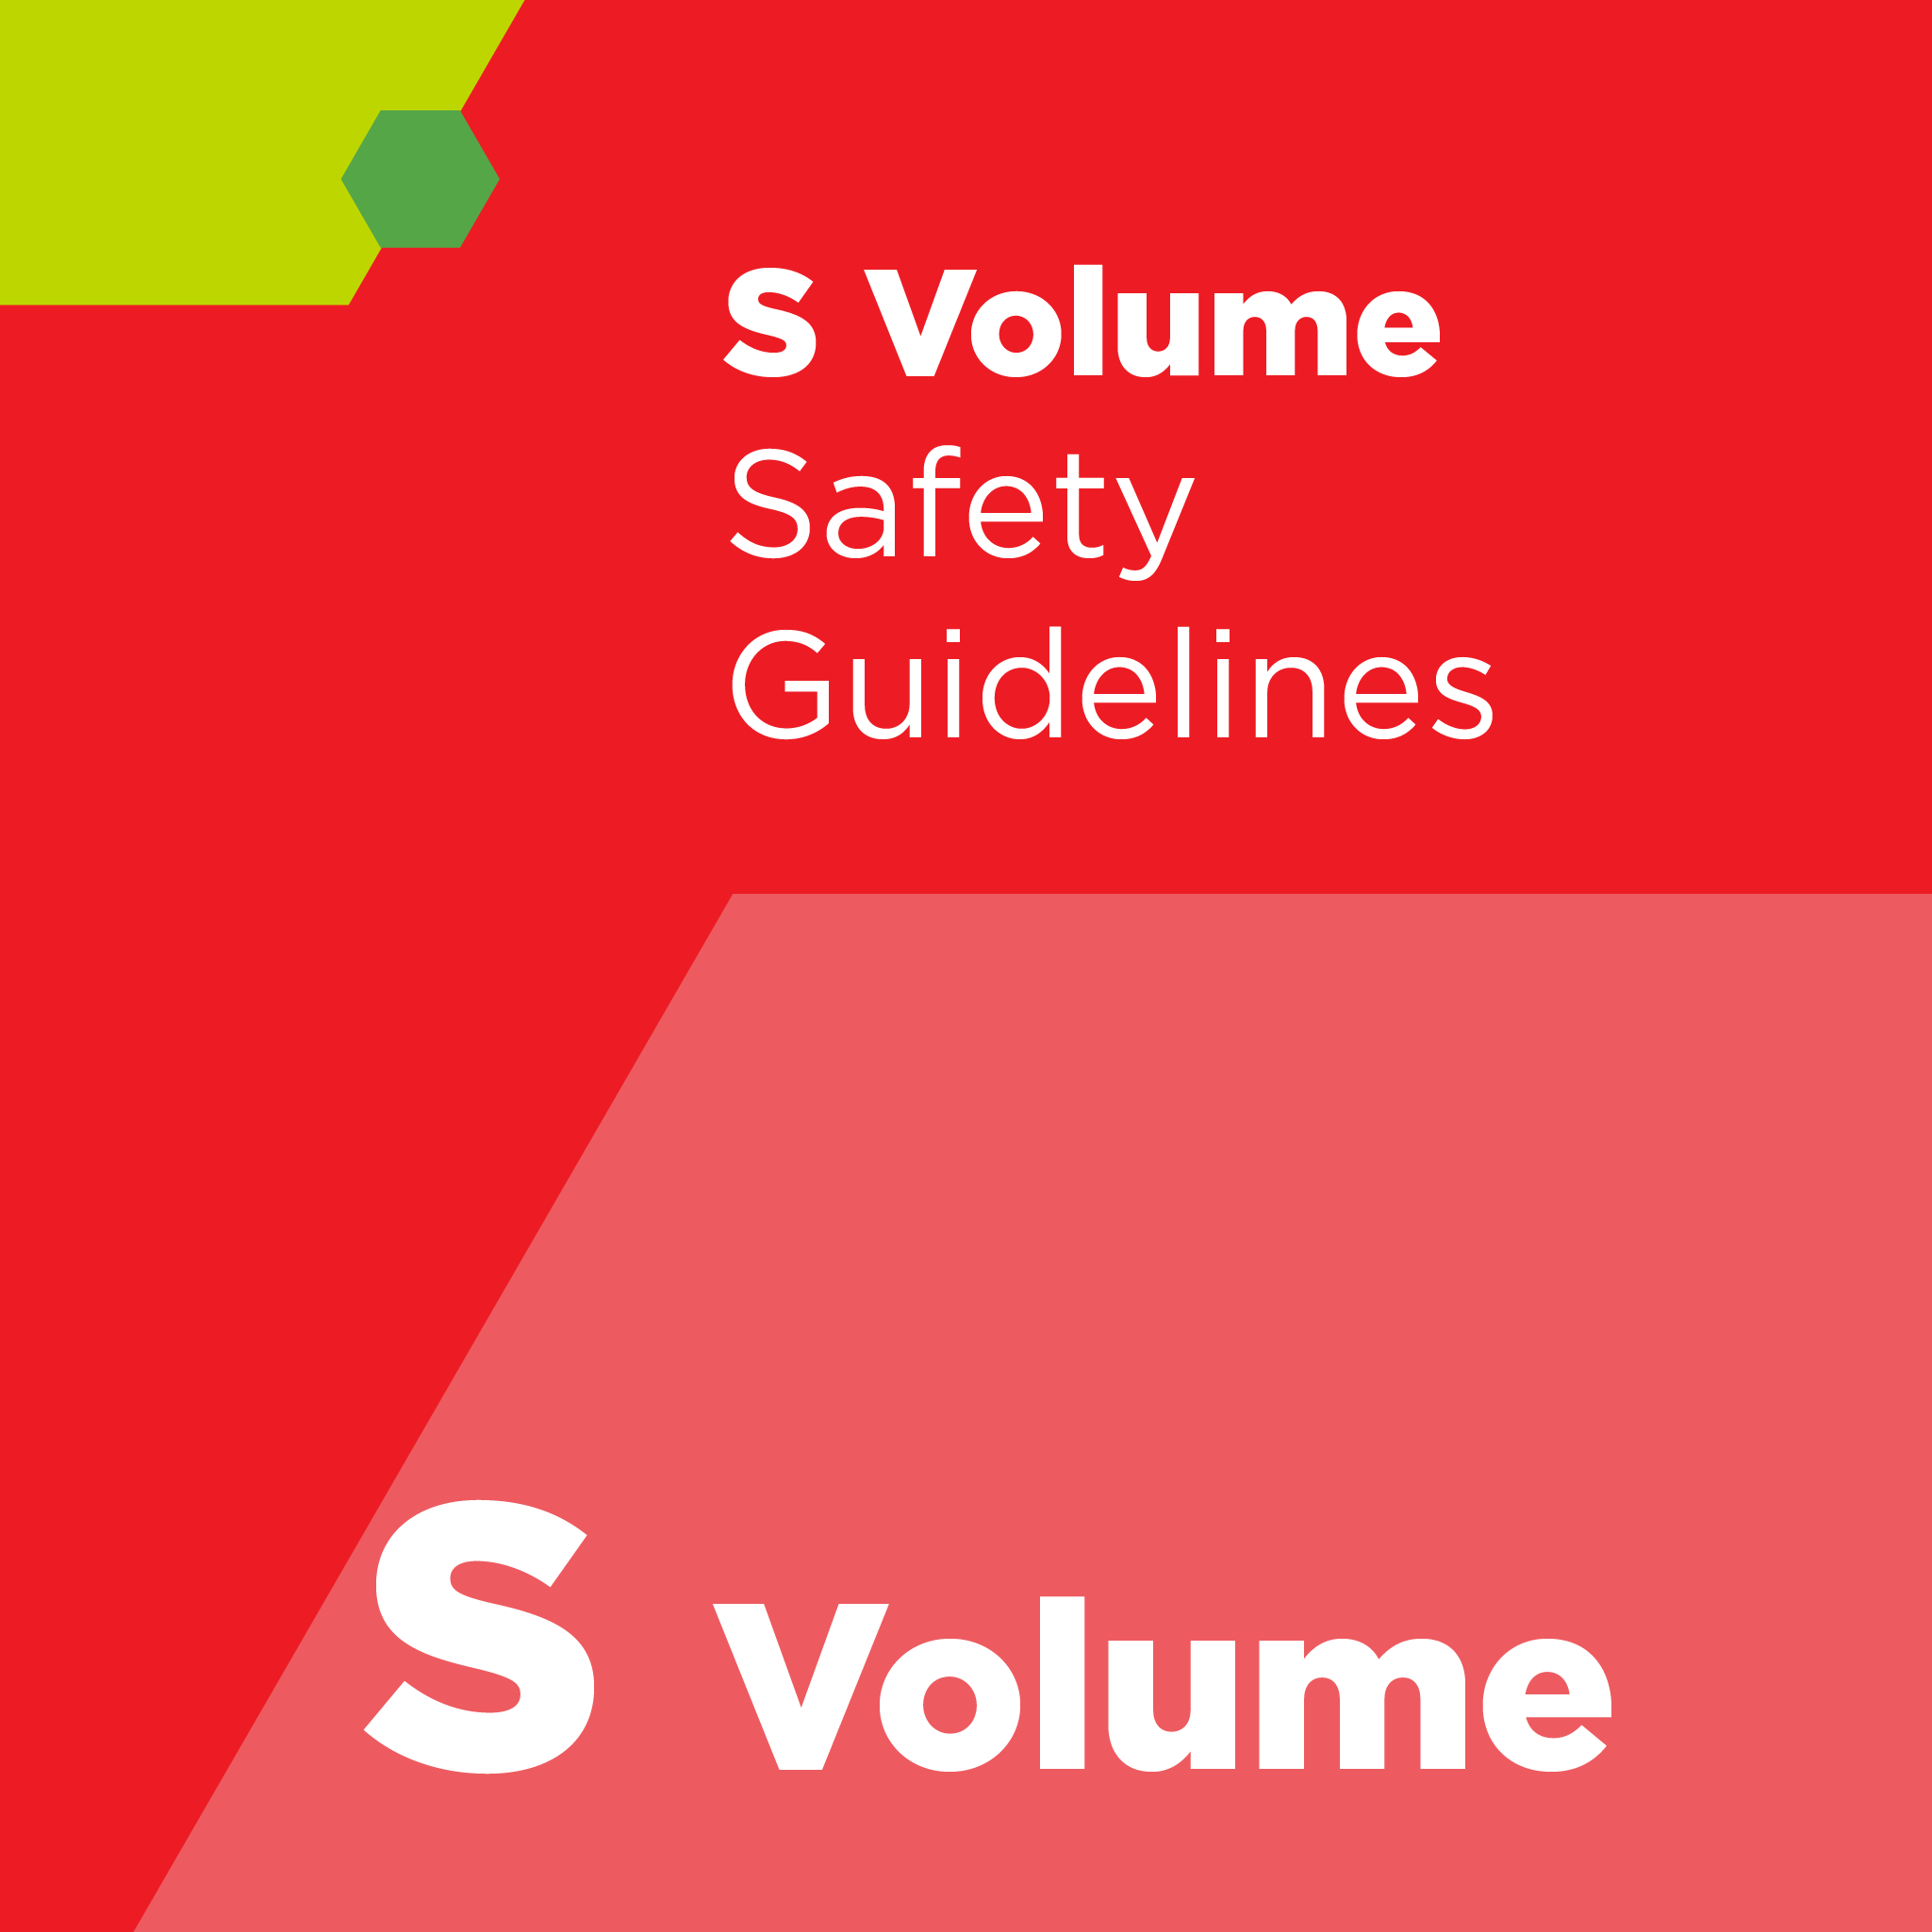 S00700 - SEMI S7 - 評価要員および評価会社の資質に関する安全ガイドライン